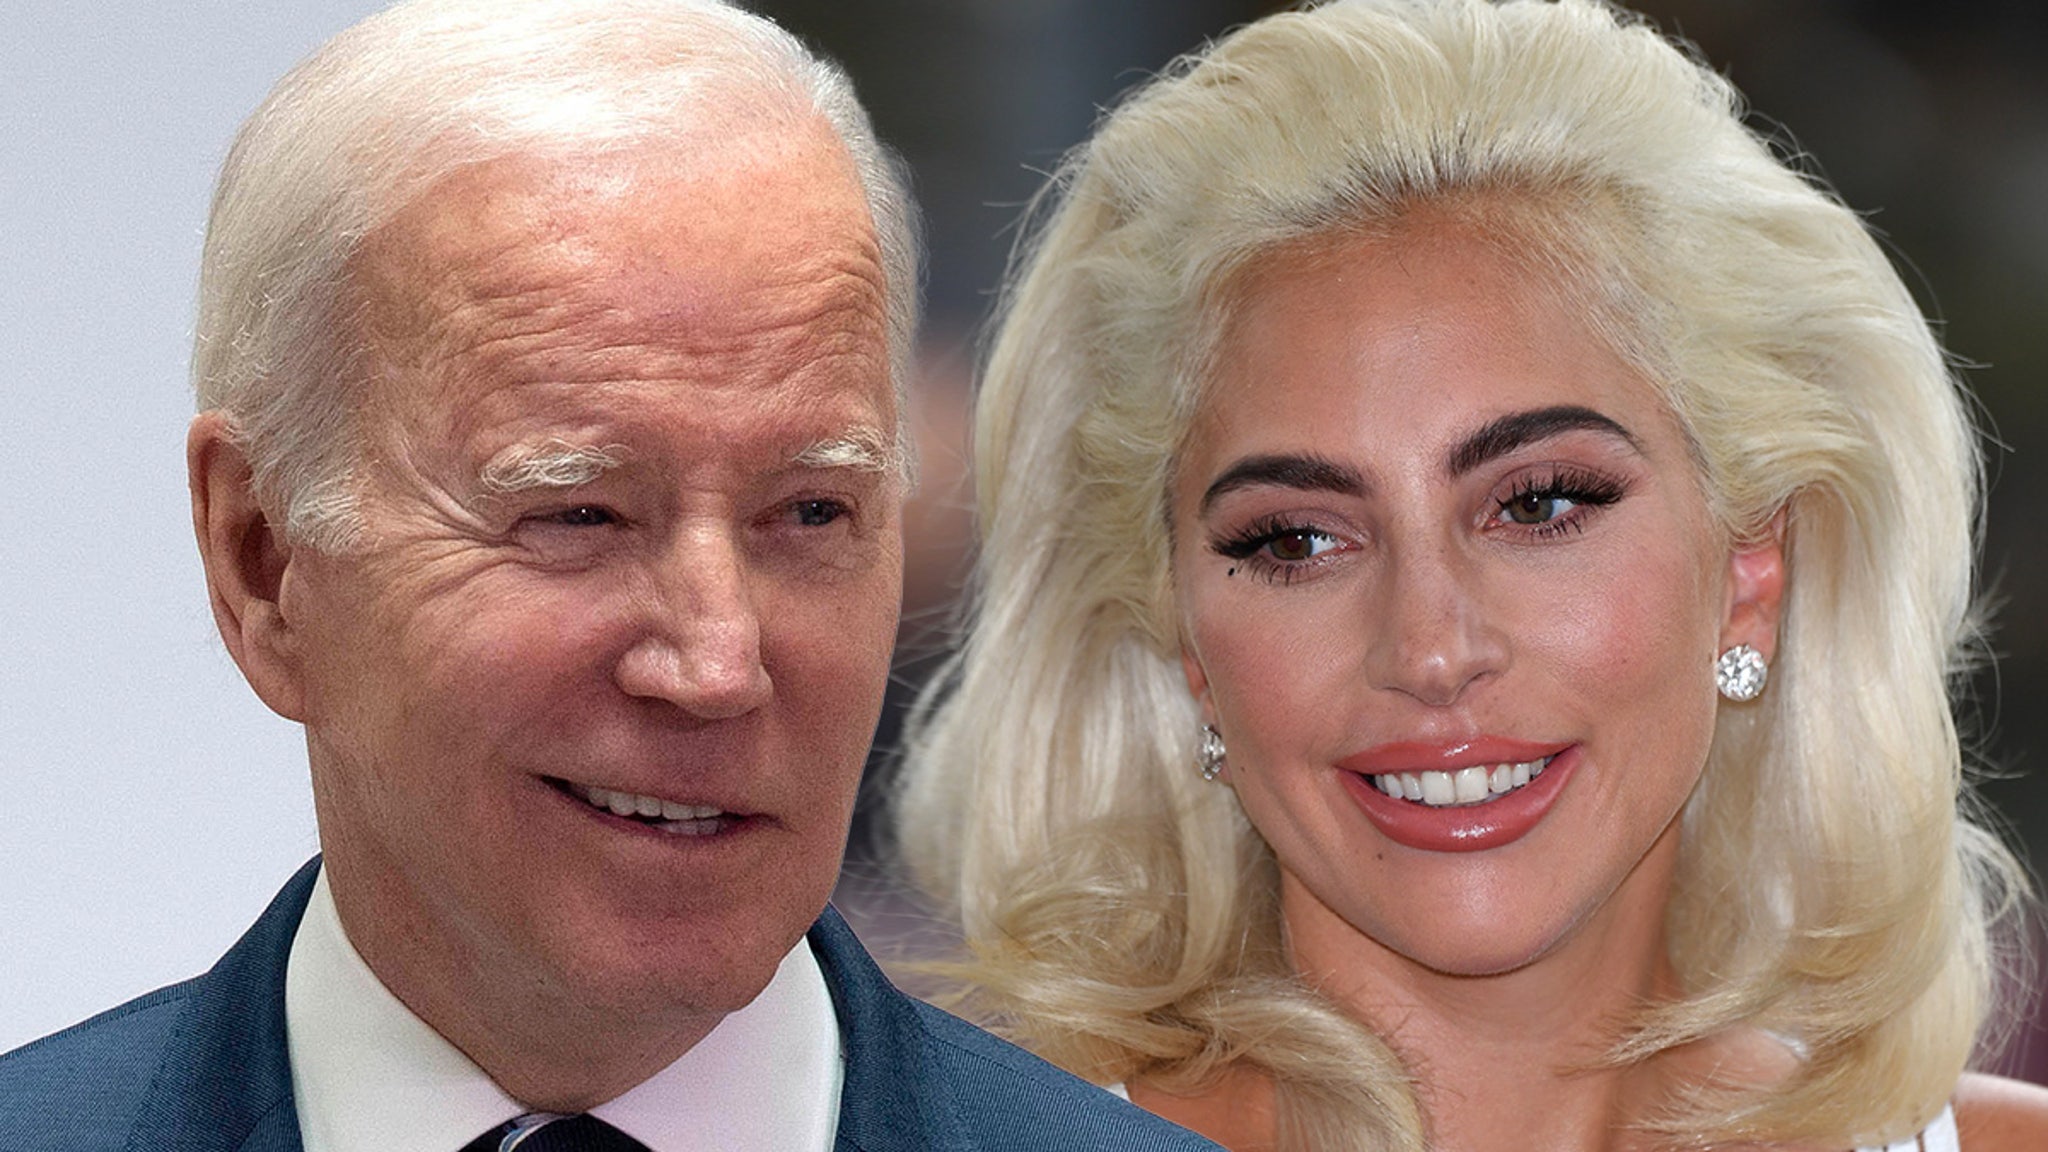 El presidente Biden nombra a Lady Gaga copresidenta del comité de artes y humanidades